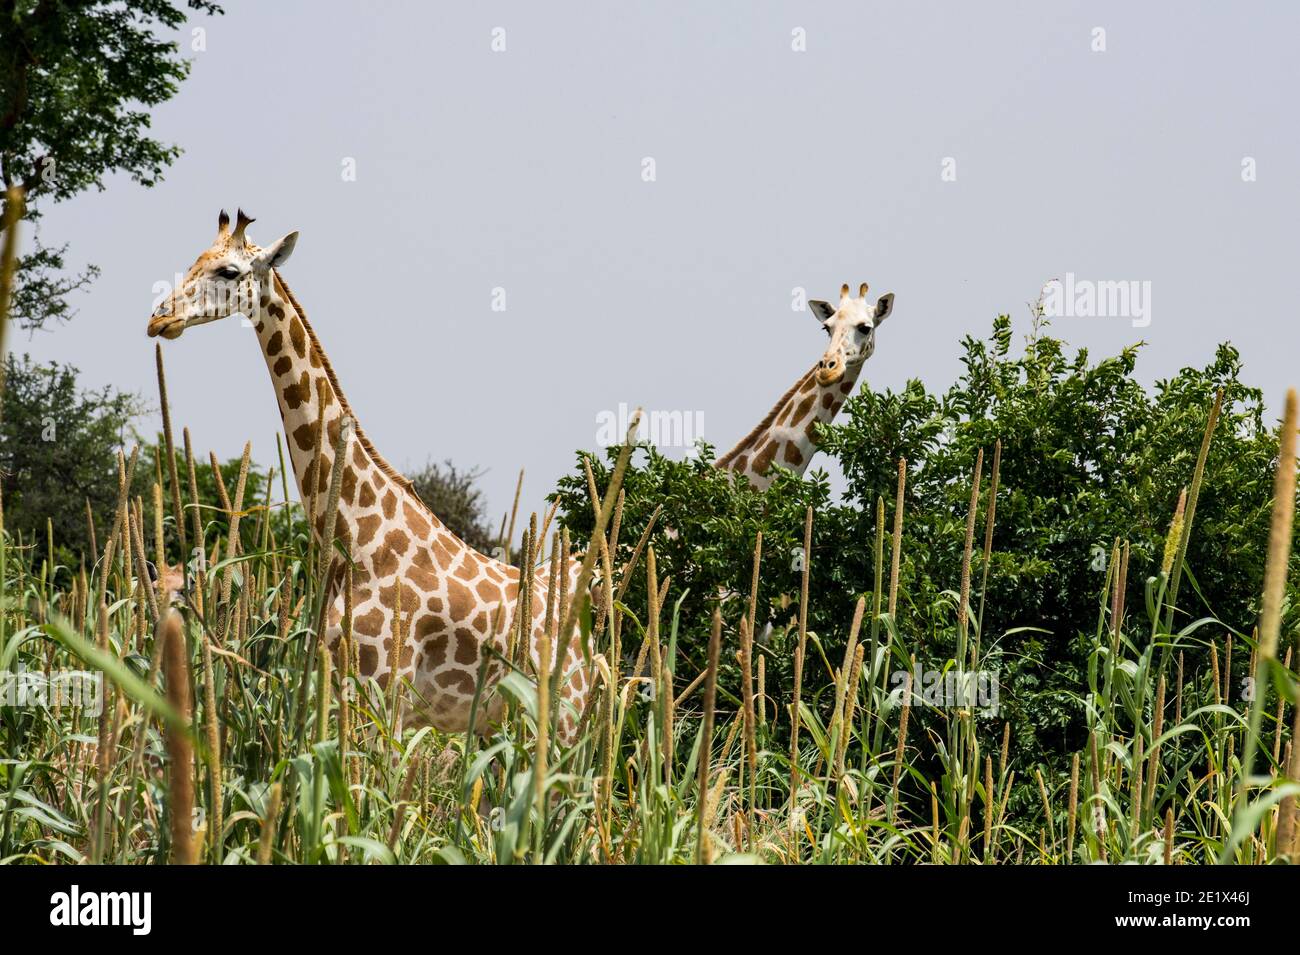 West African giraffes (Giraffa camelopardalis peralta) in high grass, Koure Giraffe Reserve, Niger Stock Photo